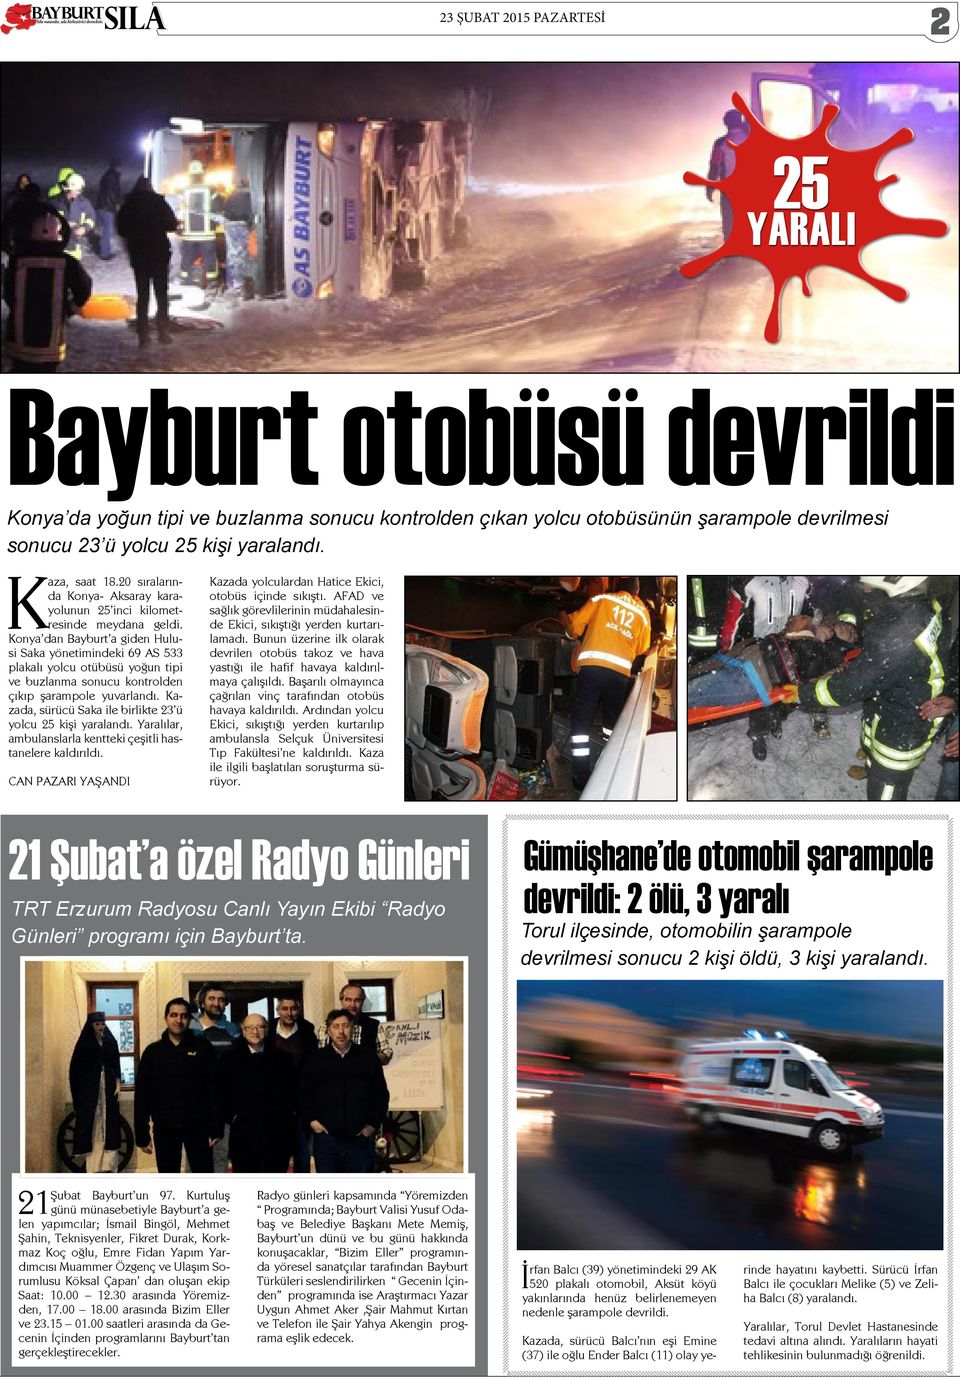 Konya dan Bayburt a giden Hulusi Saka yönetimindeki 69 AS 533 plakalı yolcu otübüsü yoğun tipi ve buzlanma sonucu kontrolden çıkıp şarampole yuvarlandı.